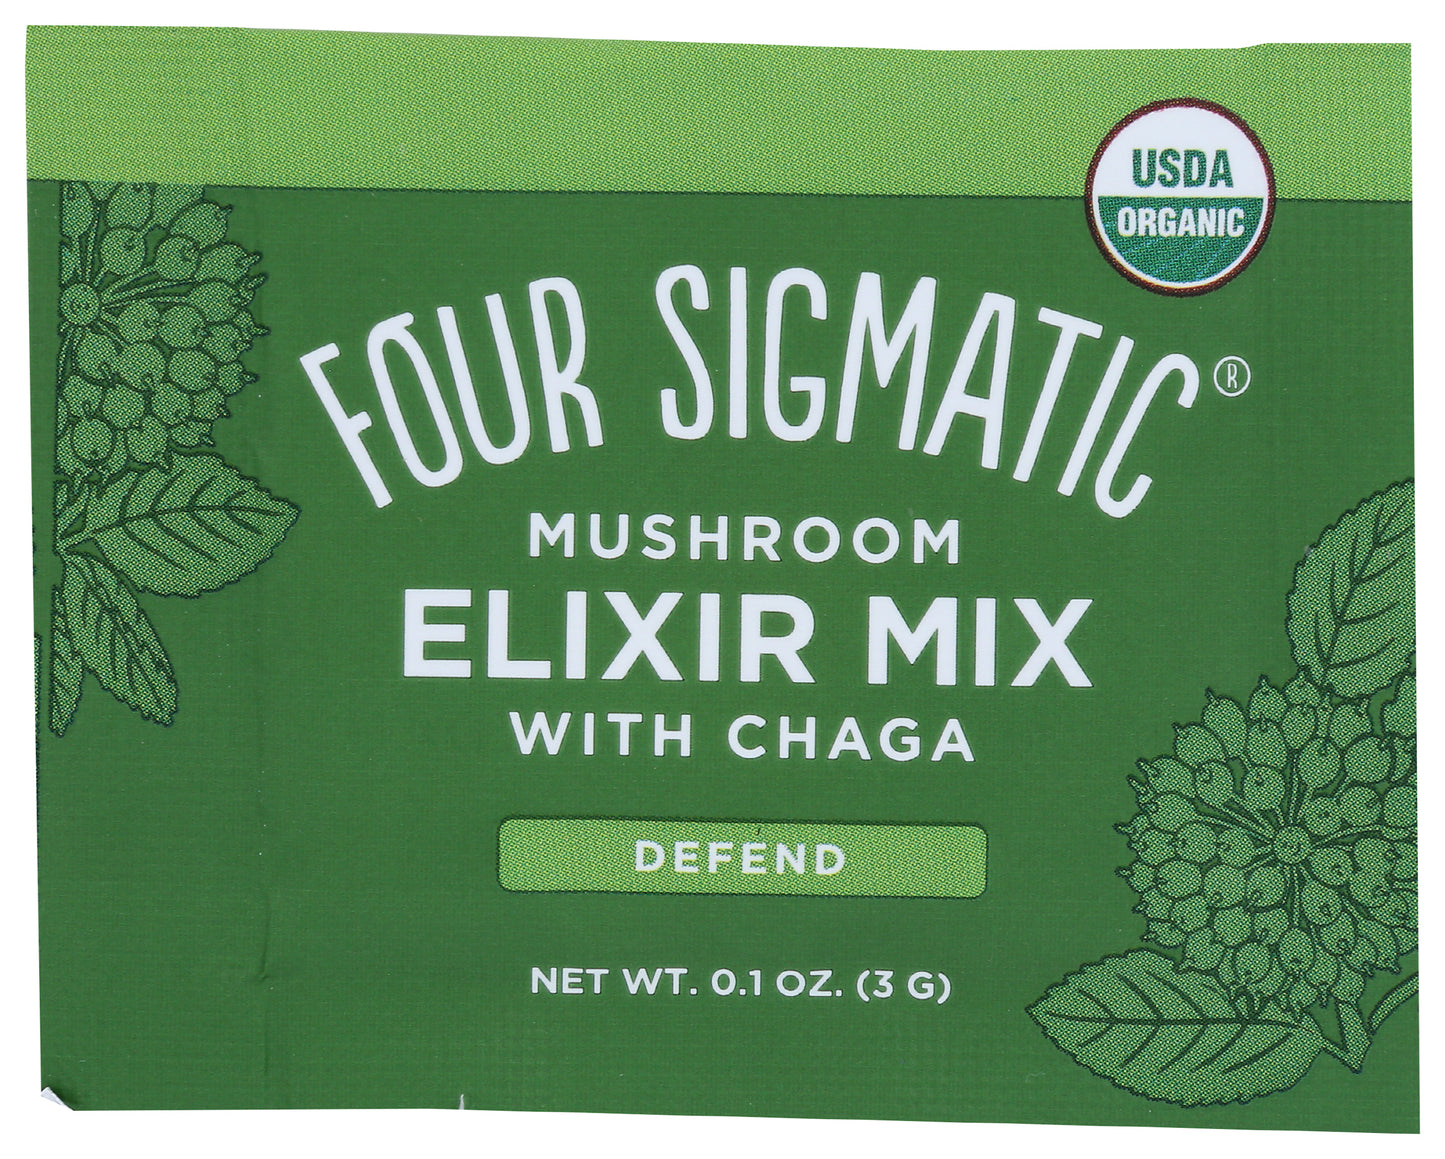 Four Sigmatic Mushroom Elixir Mix with Chaga Defend 0.1oz